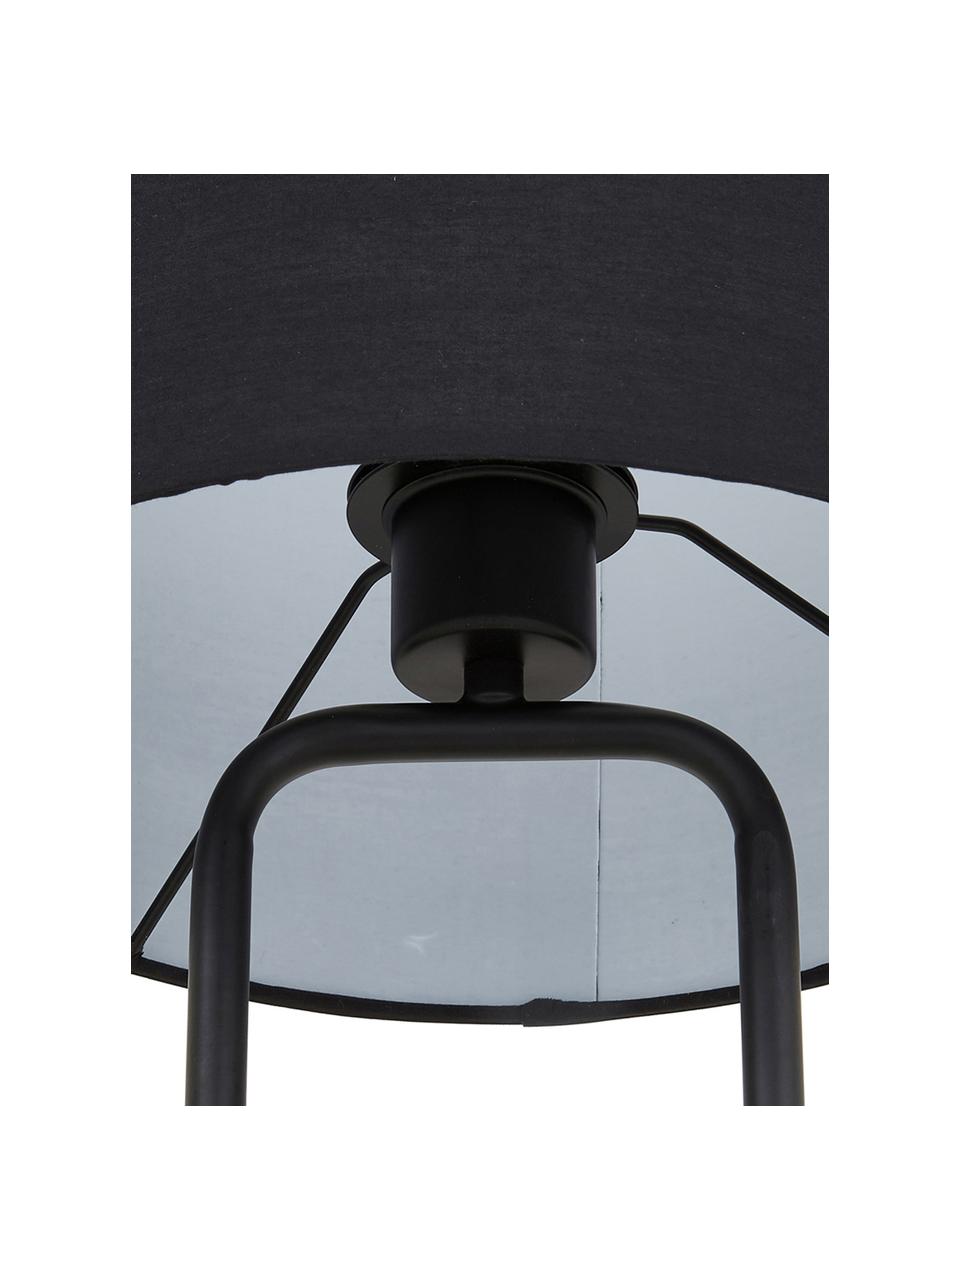 Velká stolní lampa s betonovou podstavou Pipero, Černá, šedá, Ø 28 cm, V 51 cm